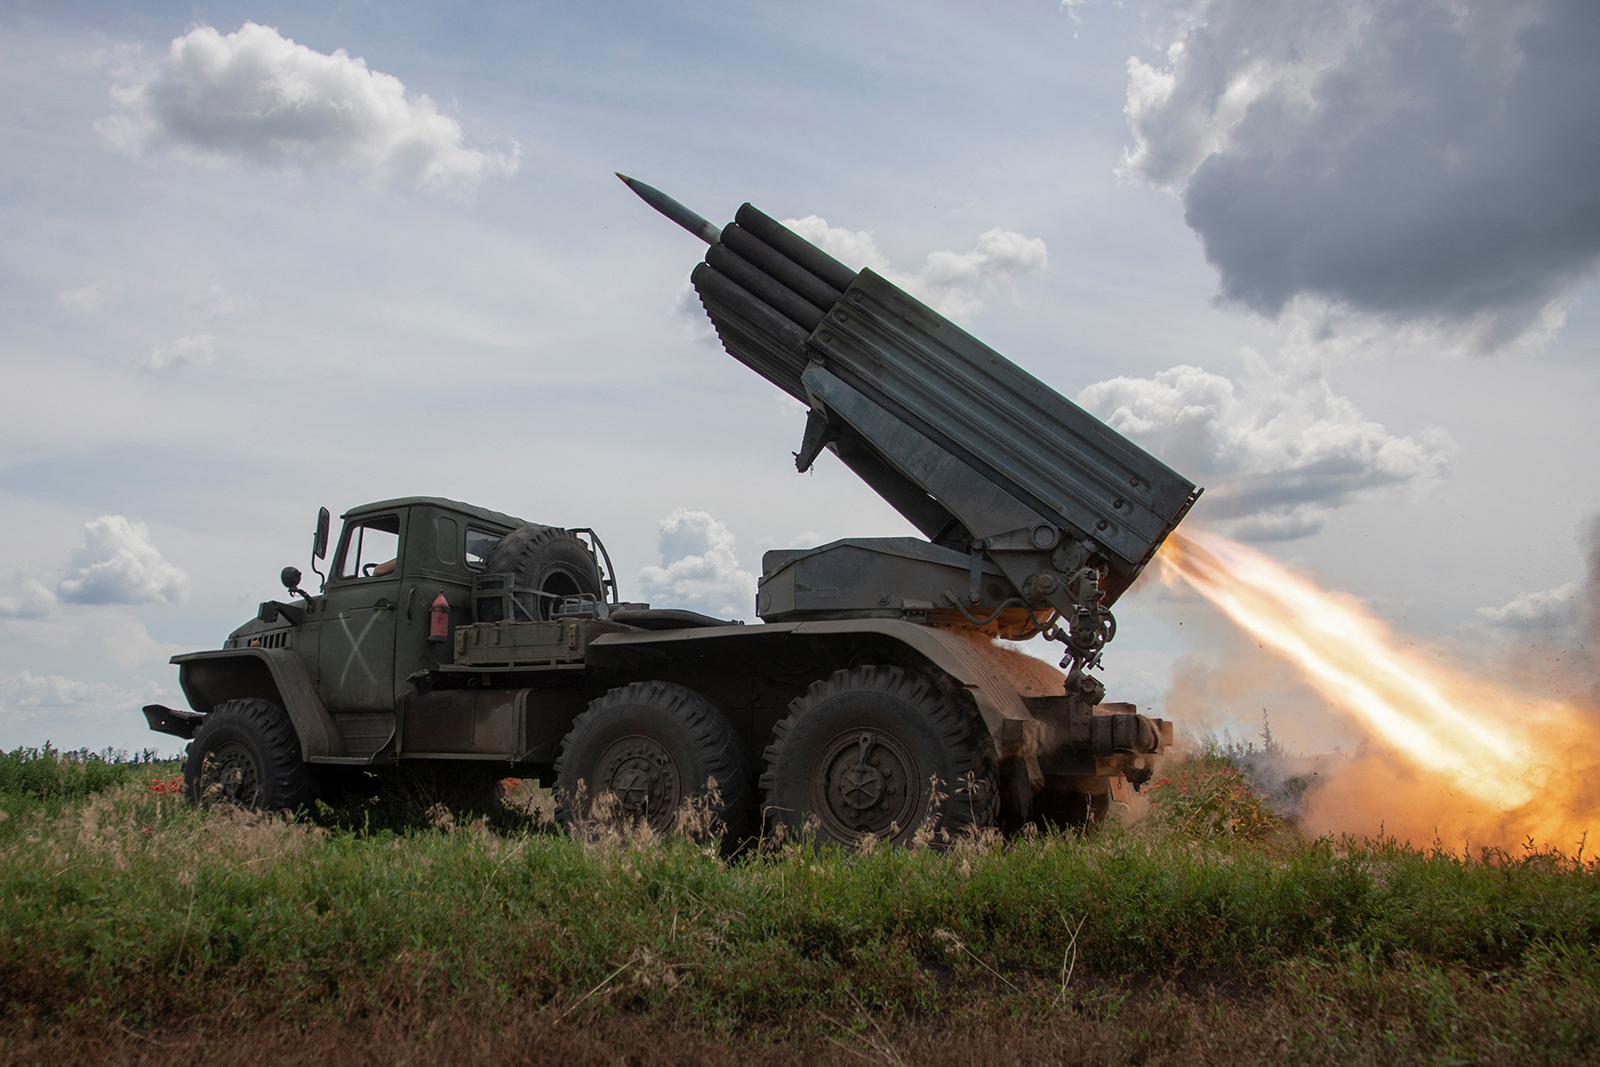 Ukrainian servicemen fire a BM-21 Grad multiple launch rocket system towards Russian troops near a front line in Donetsk region, Ukraine on June 21.